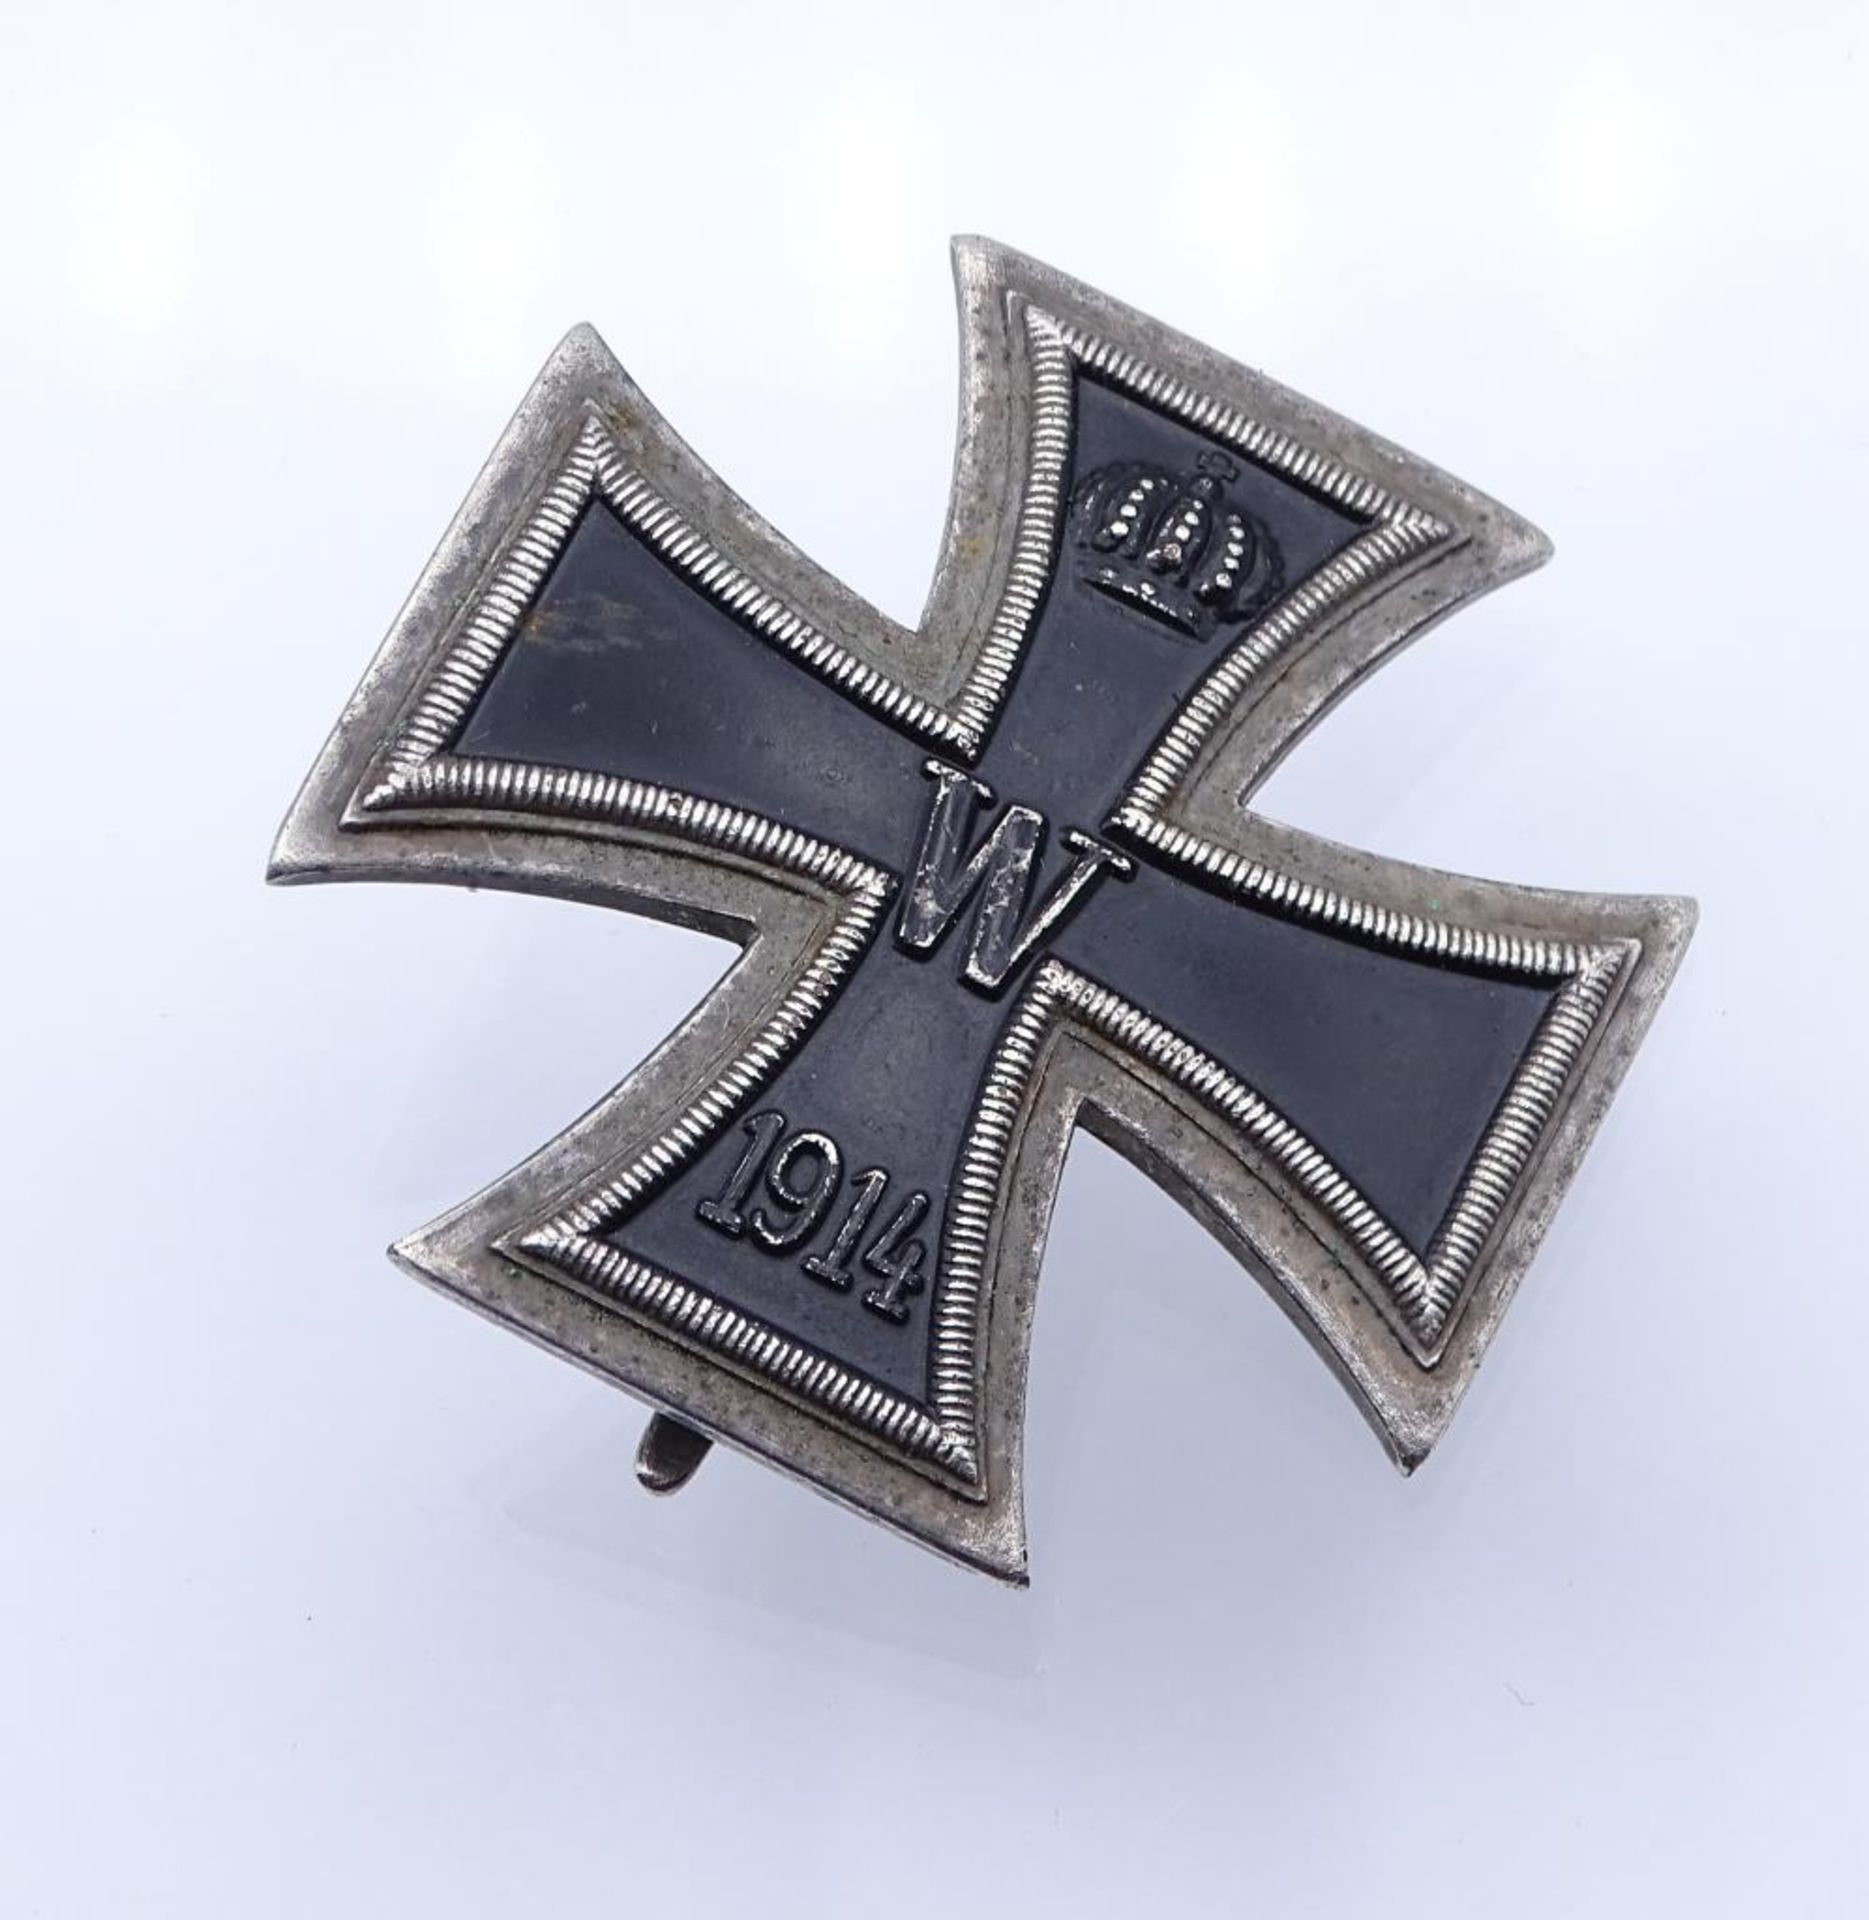 Eisernes Kreuz 1.Wk, 1.Klasse (gewölbte Form),191- - -22.61 % buyer's premium on the hammer priceVAT